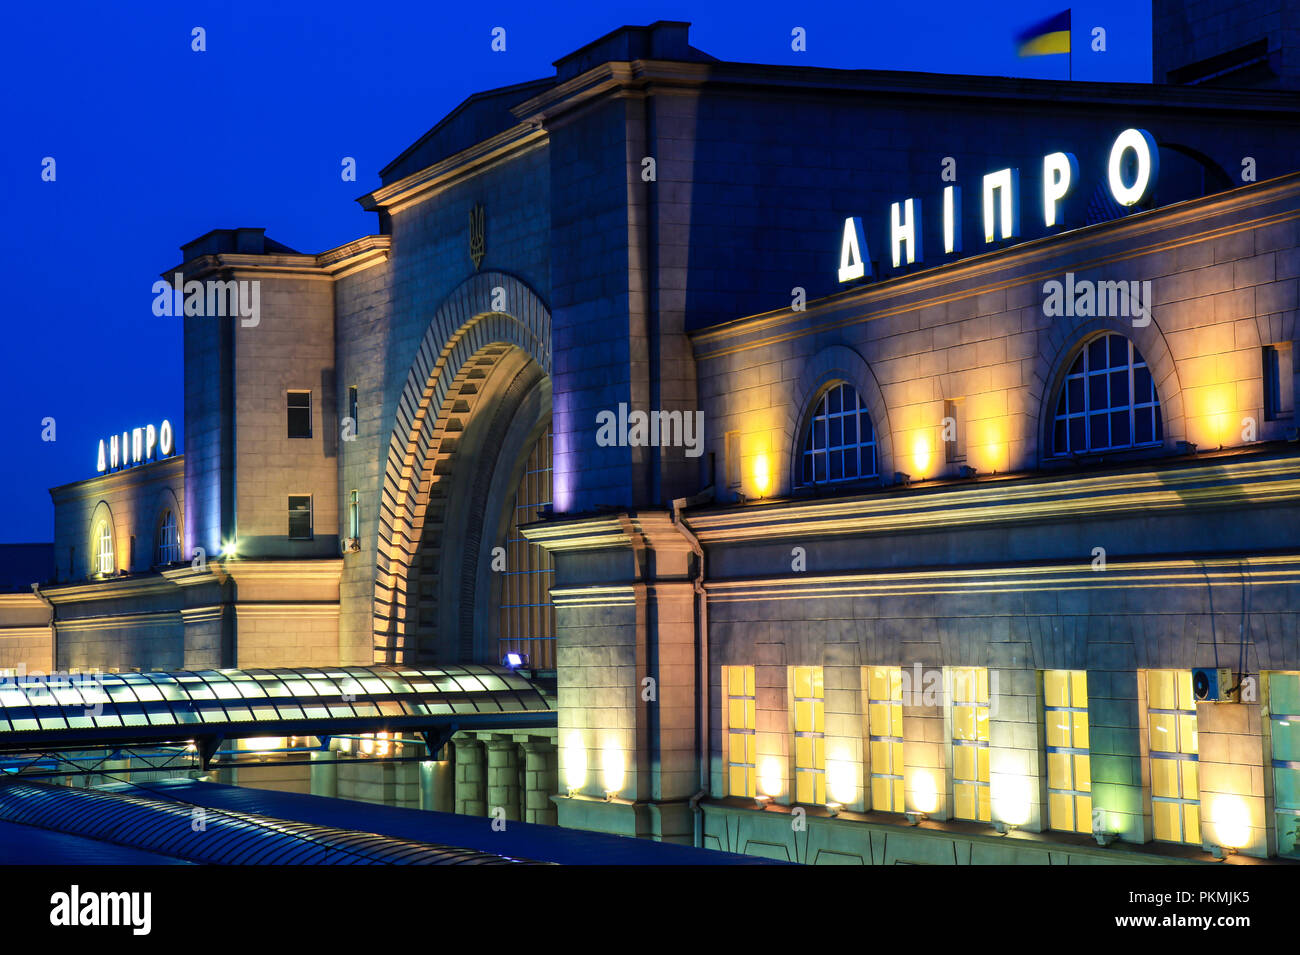 Le bâtiment de la gare avec l'inscription "nipro', avec allumage à Dnipropetrovsk ville la nuit.(Dniepr Dniepropetrovsk, Ukraine). Banque D'Images